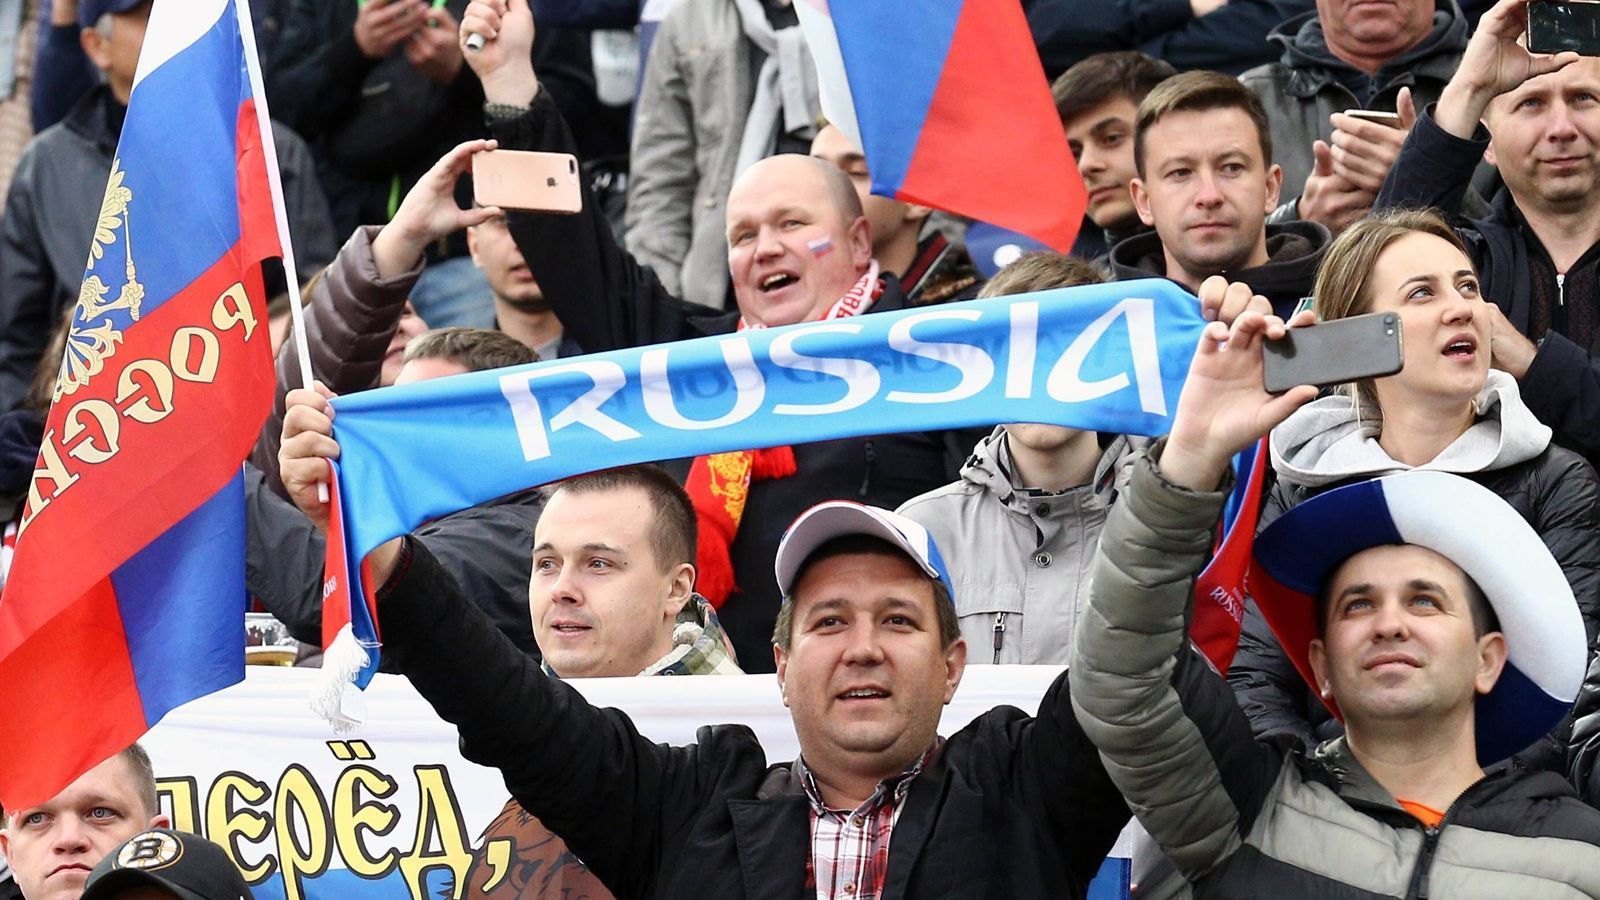 
                <strong>1. Platz: Russland (871.797 Tickets)</strong><br>
                Fußball ist in Russland populär, die Vorfreude auf die WM ist groß. Entsprechend haben die Fans im Vorverkauf kräftig zugelangt. 
              